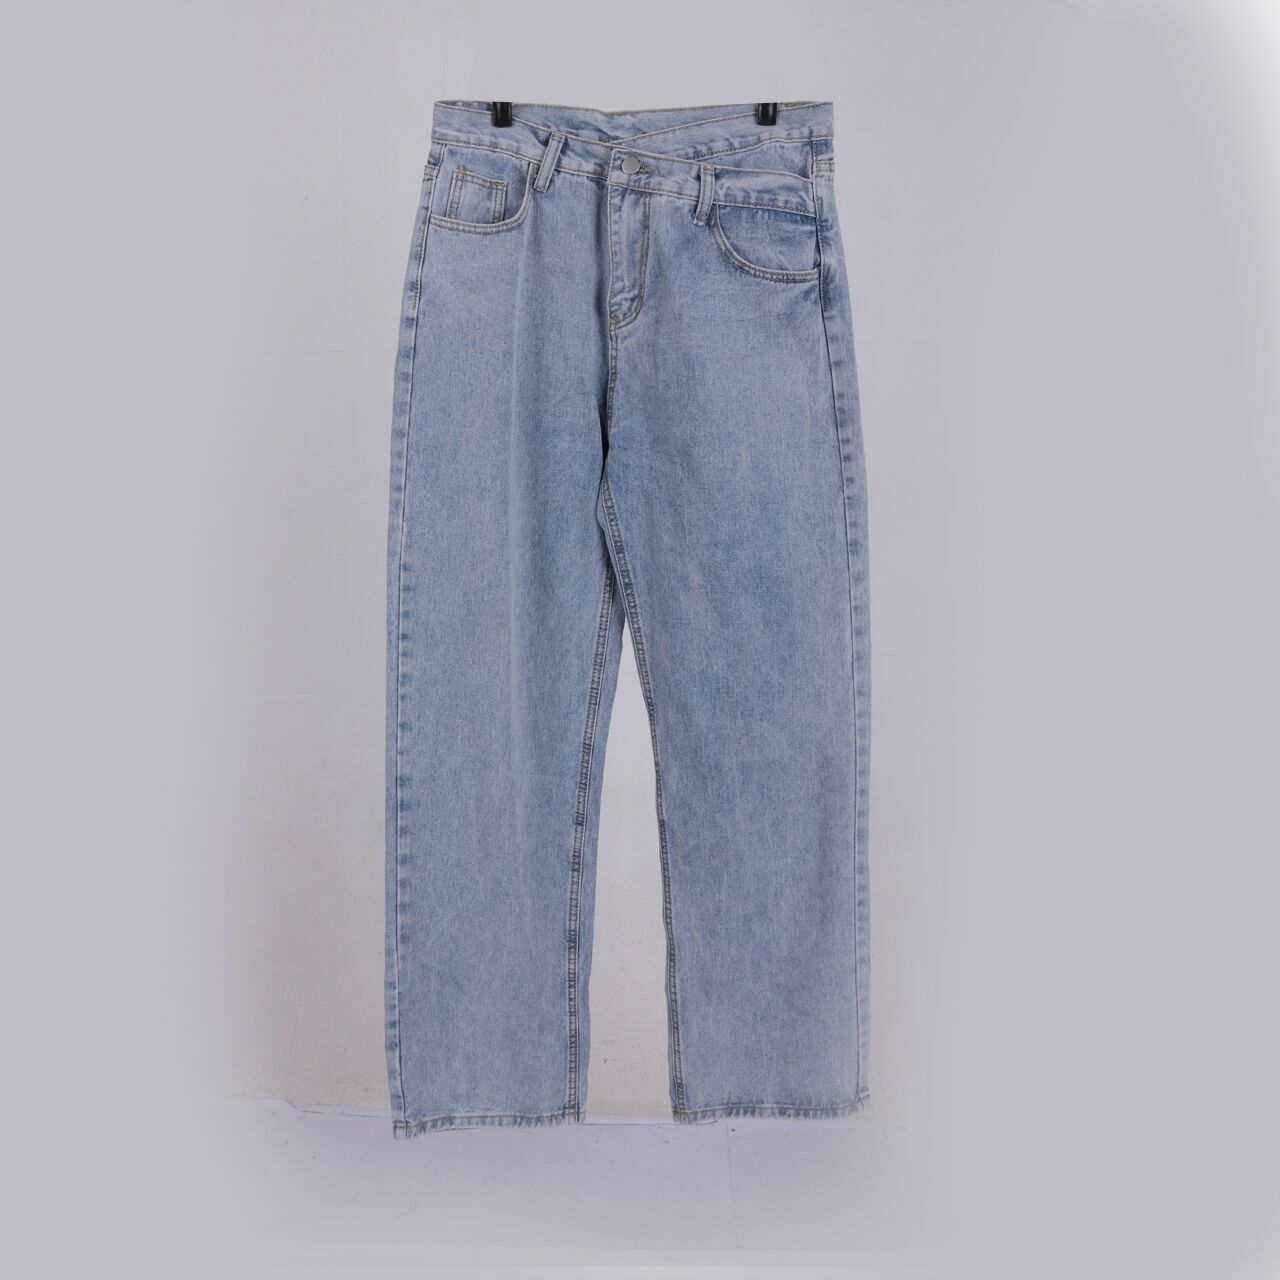 callie Light Blue Jeans Long Pants